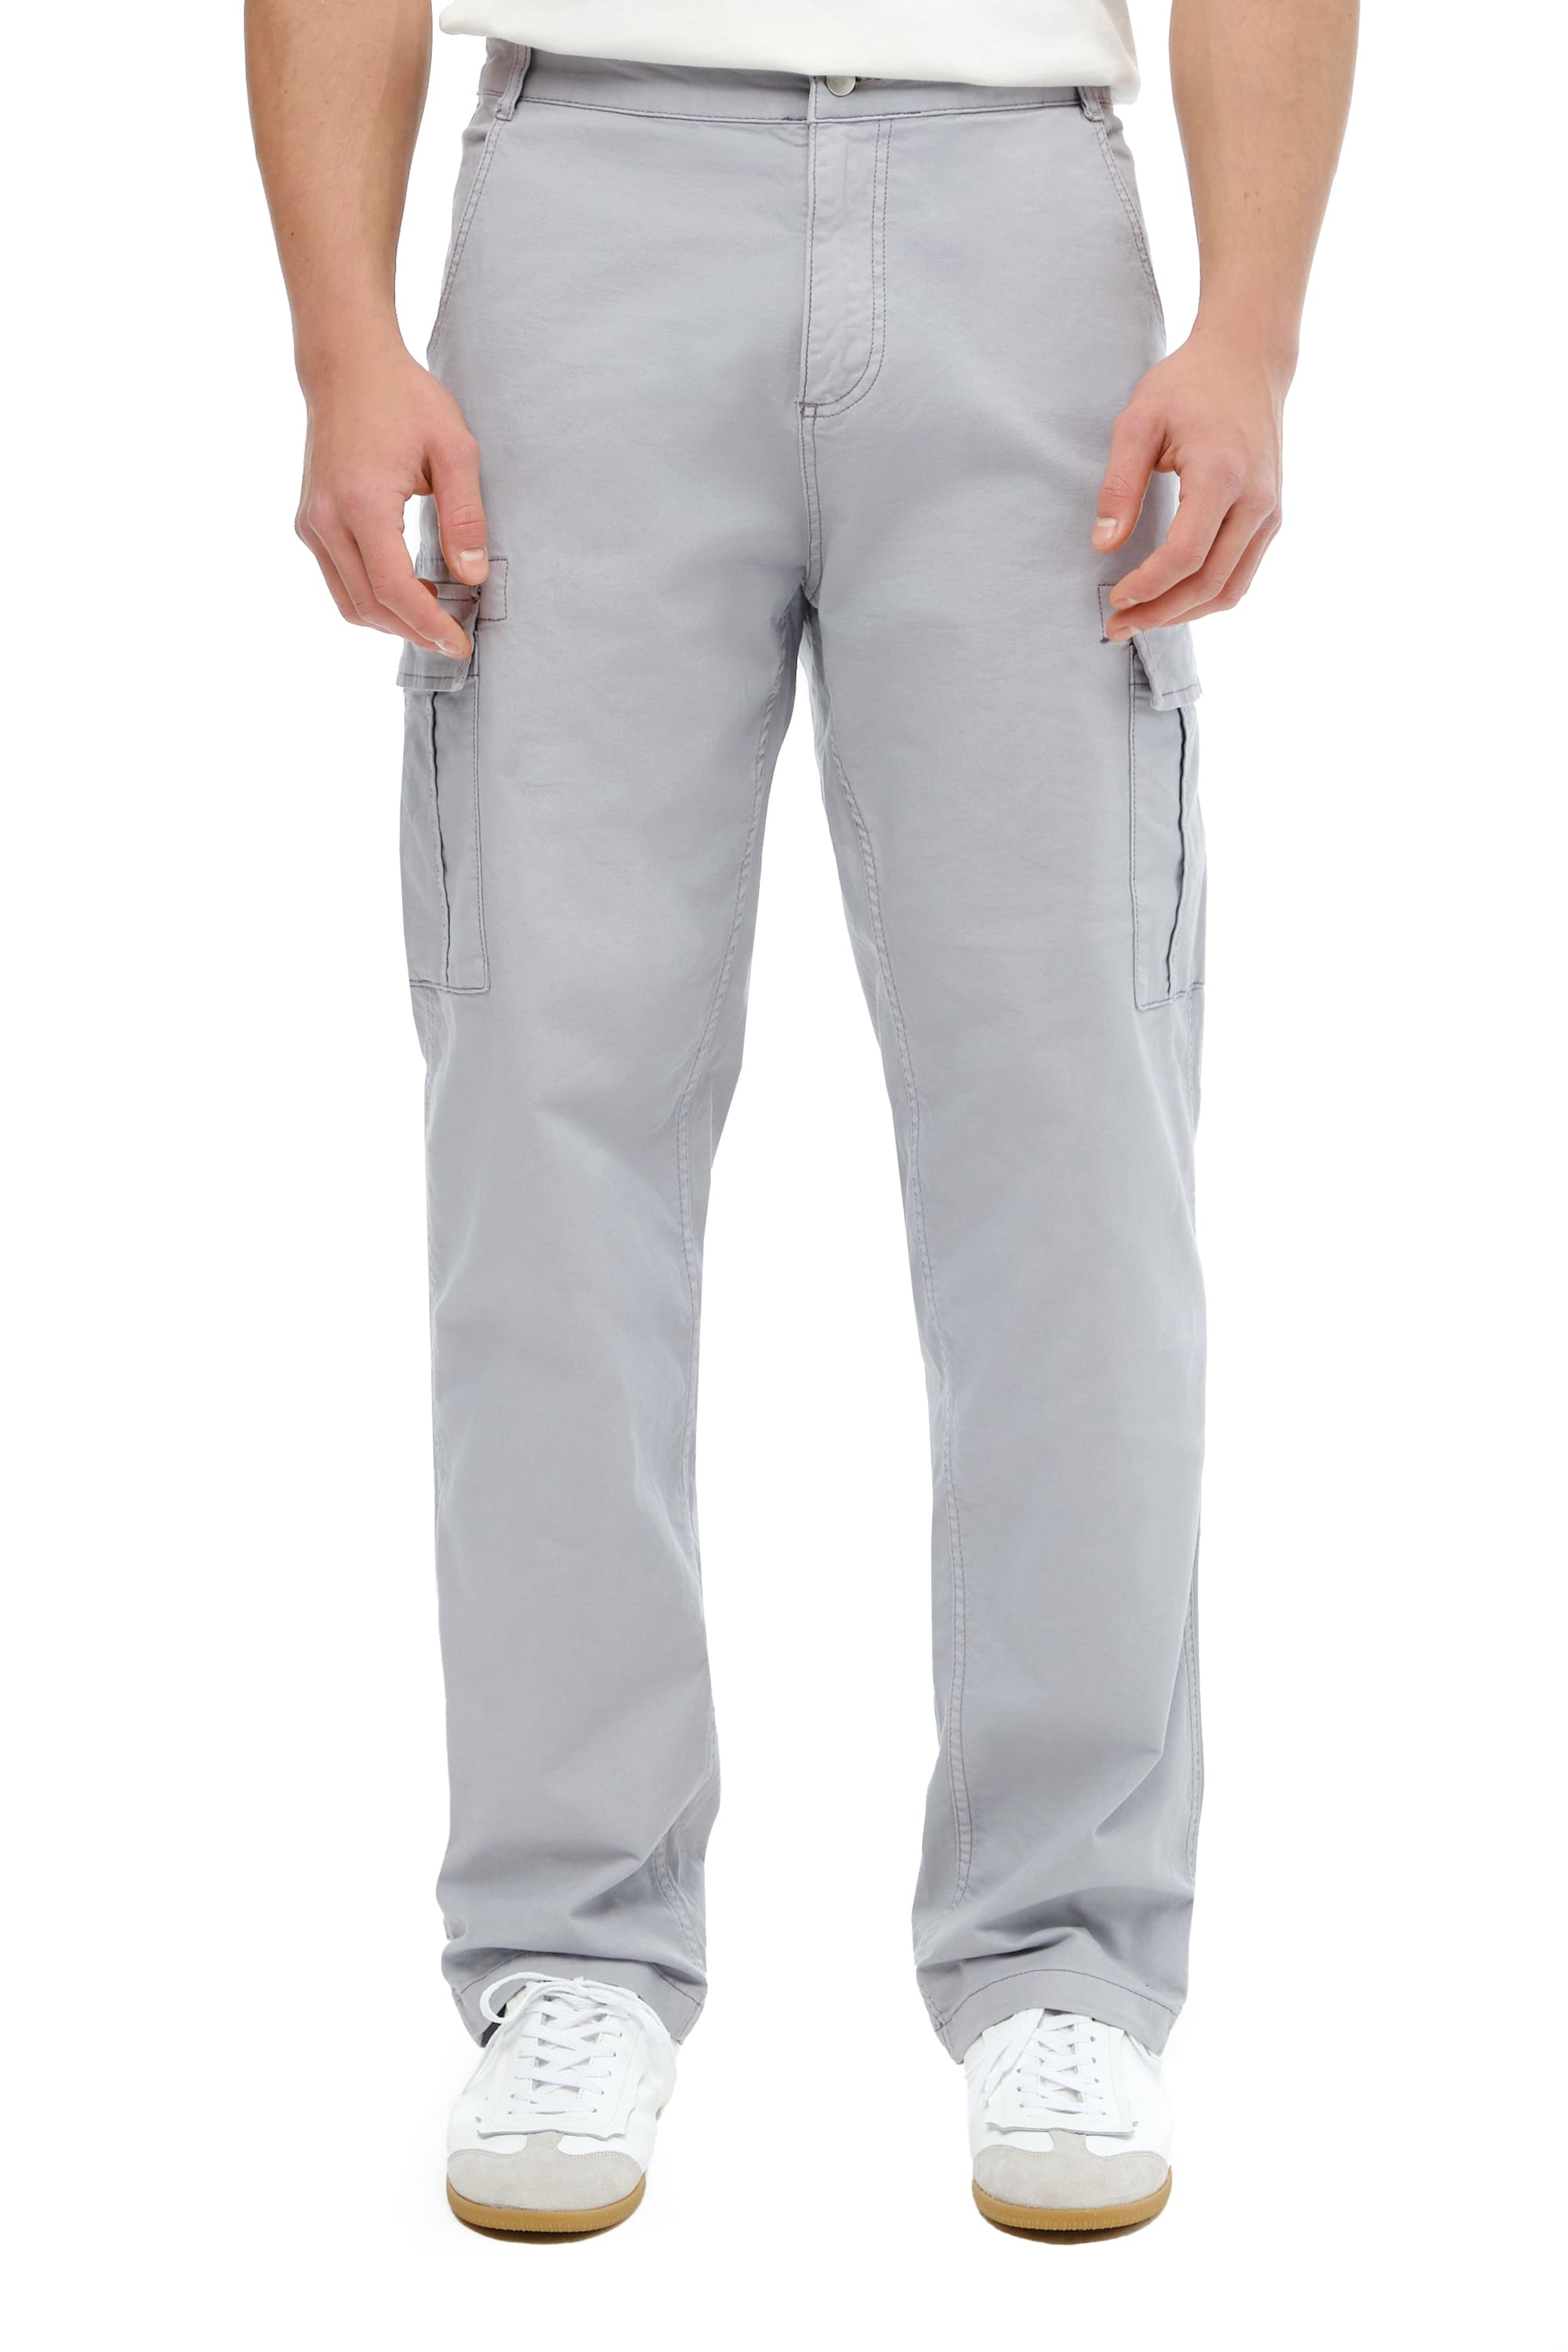 мужские брюки карго с накладными карманами
